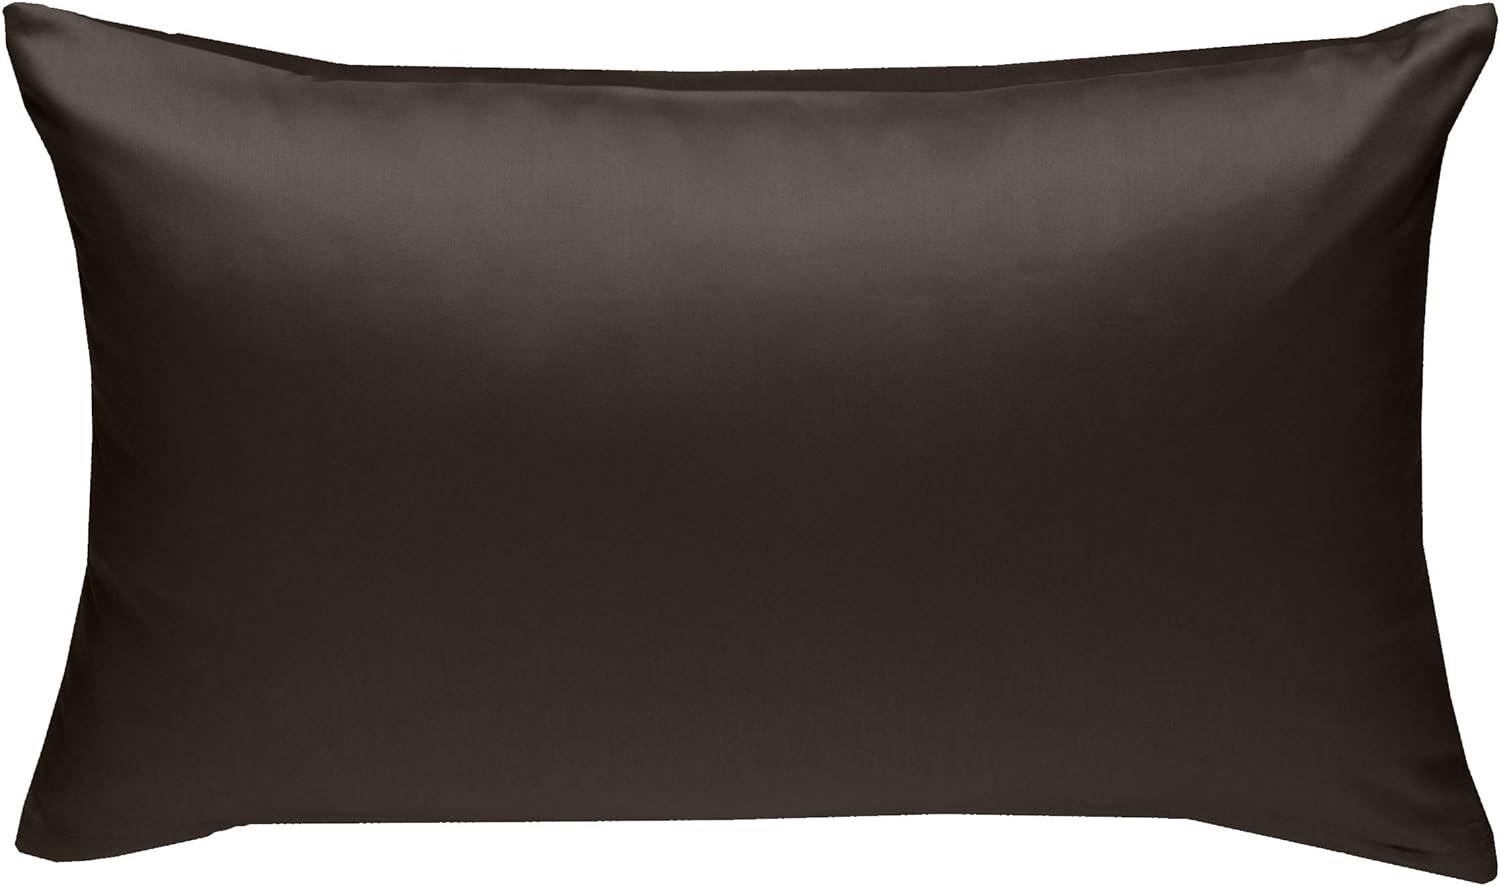 Bettwaesche-mit-Stil Mako-Satin / Baumwollsatin Bettwäsche uni / einfarbig Espresso Braun Kissenbezug 40x60 cm Bild 1